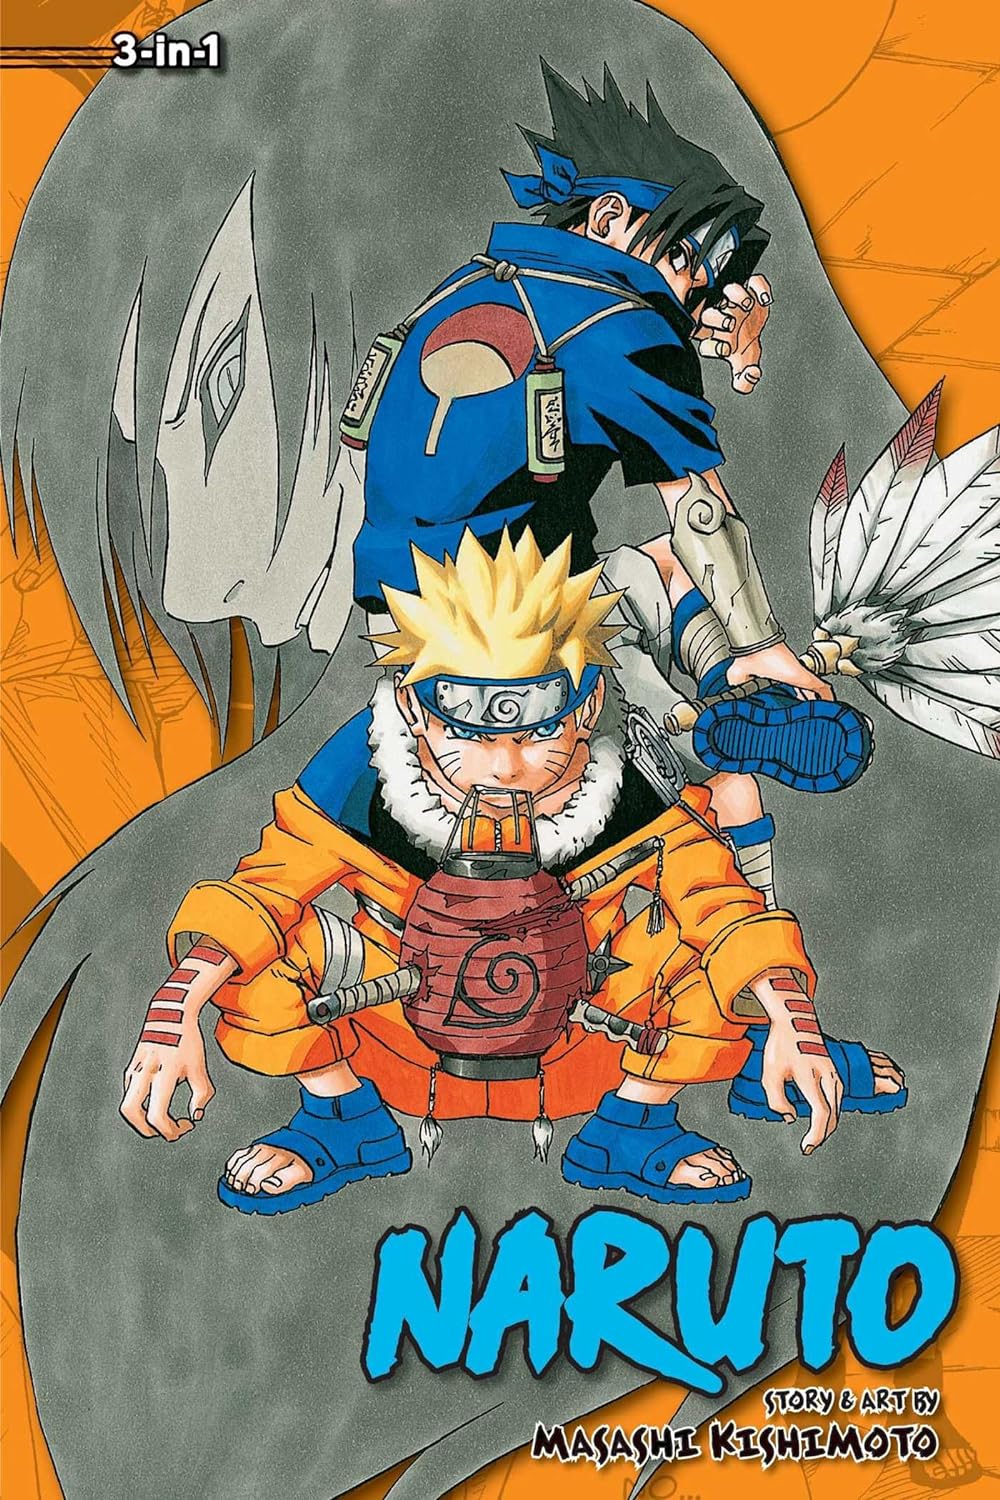 Naruto (3-in-1 Edition) Vol. 3 (Vol. 7, 8 & 9)